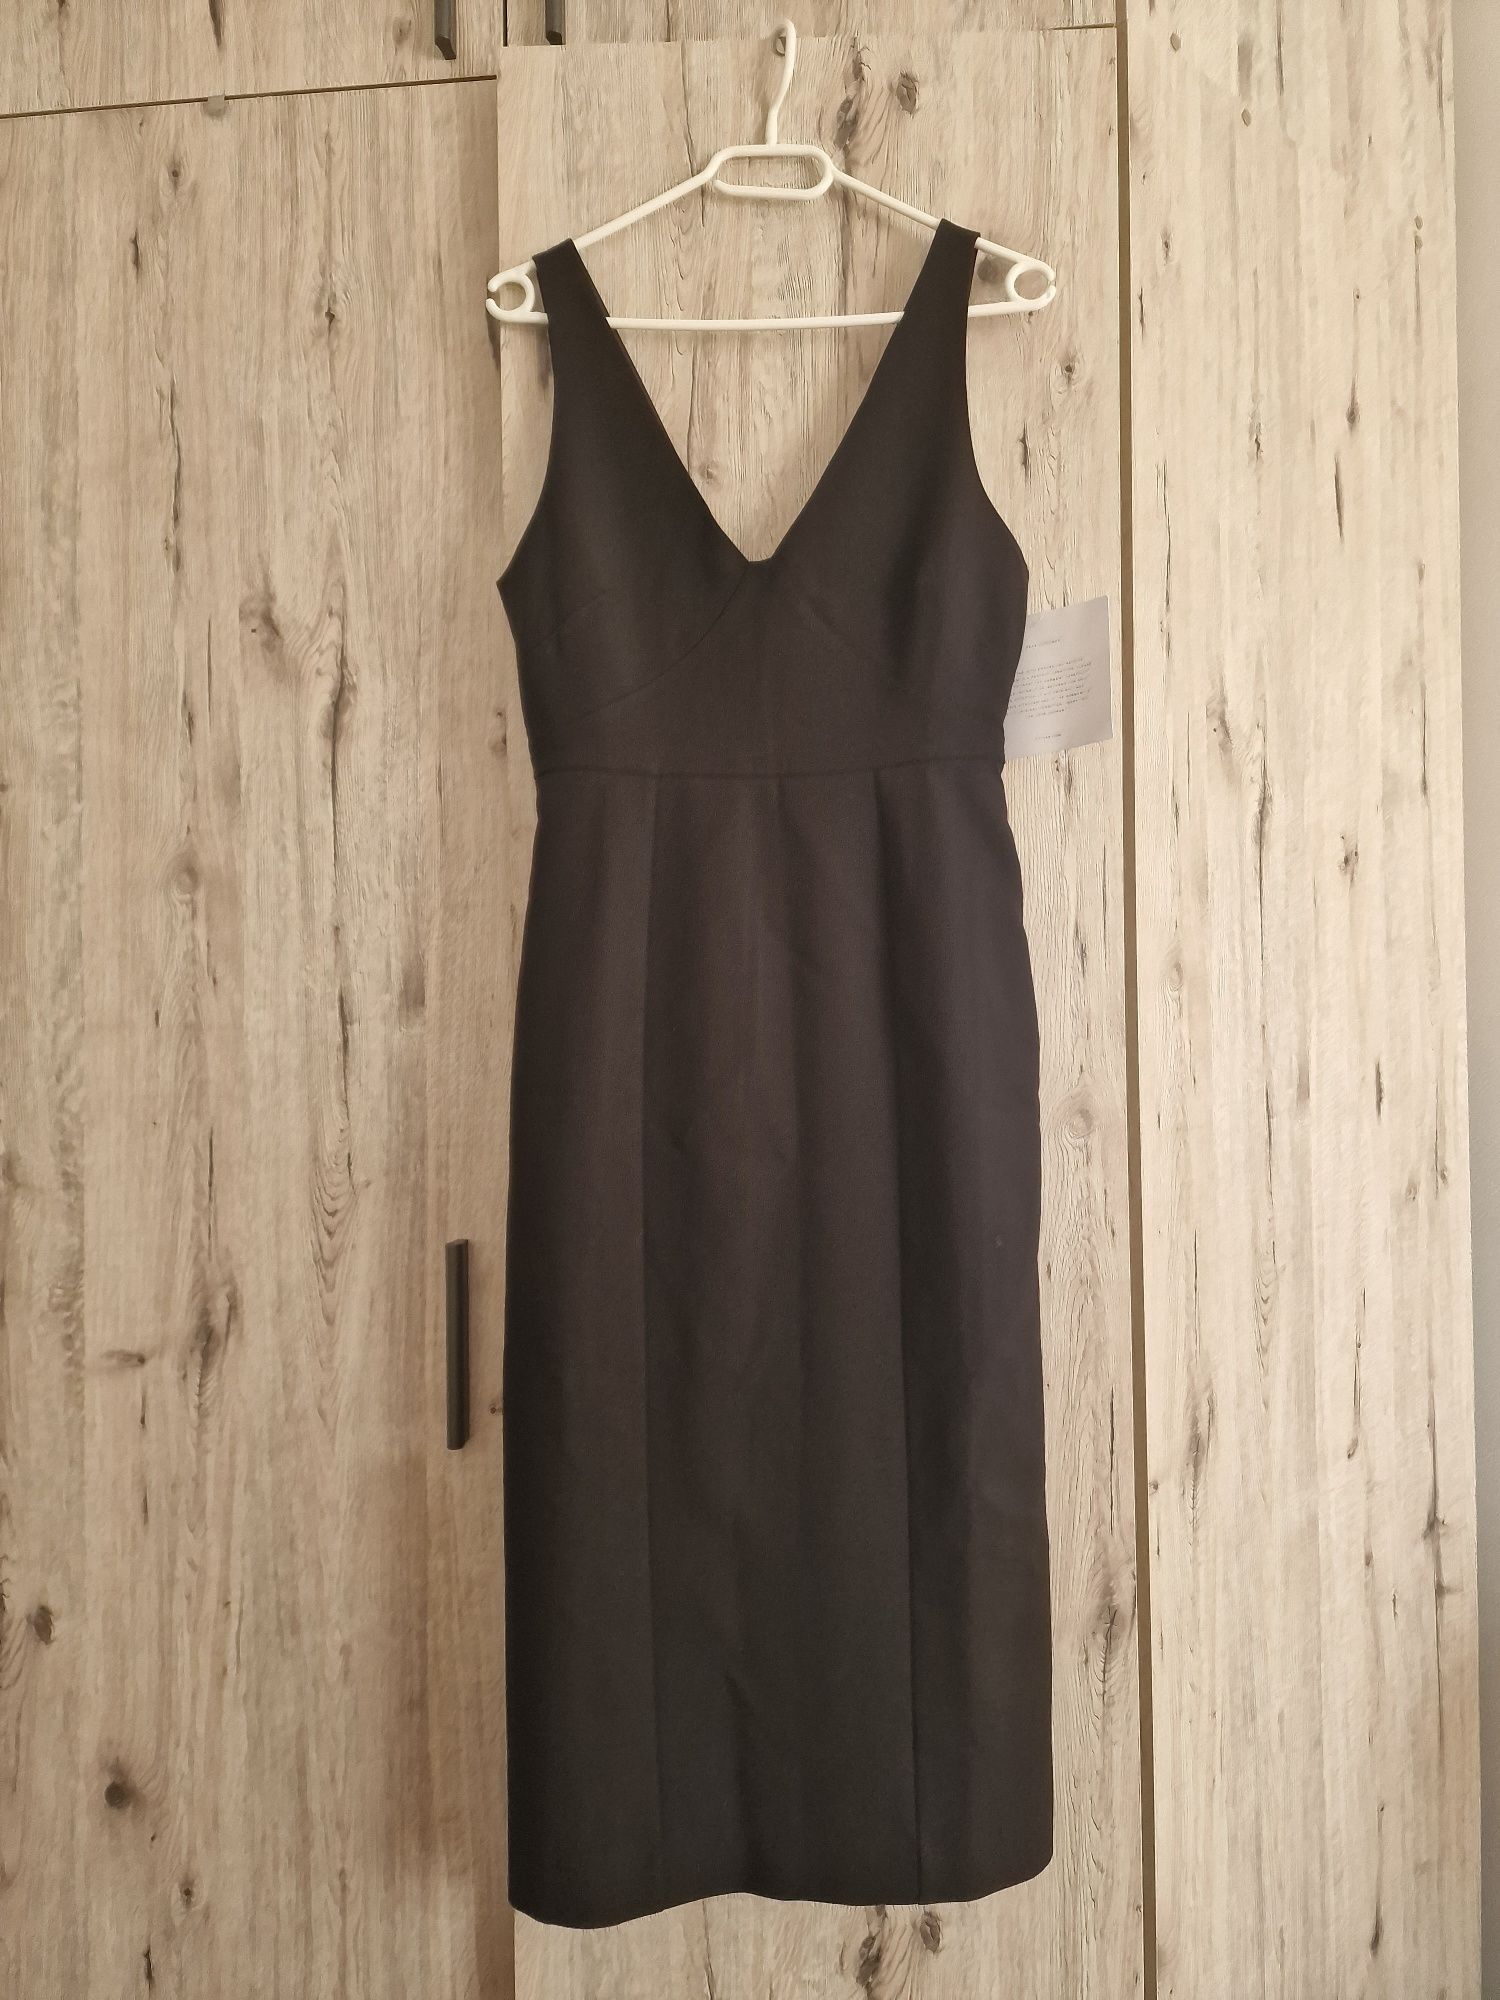 Czarna sukienka Ivy&Oak, rozmiar 34, NOWA